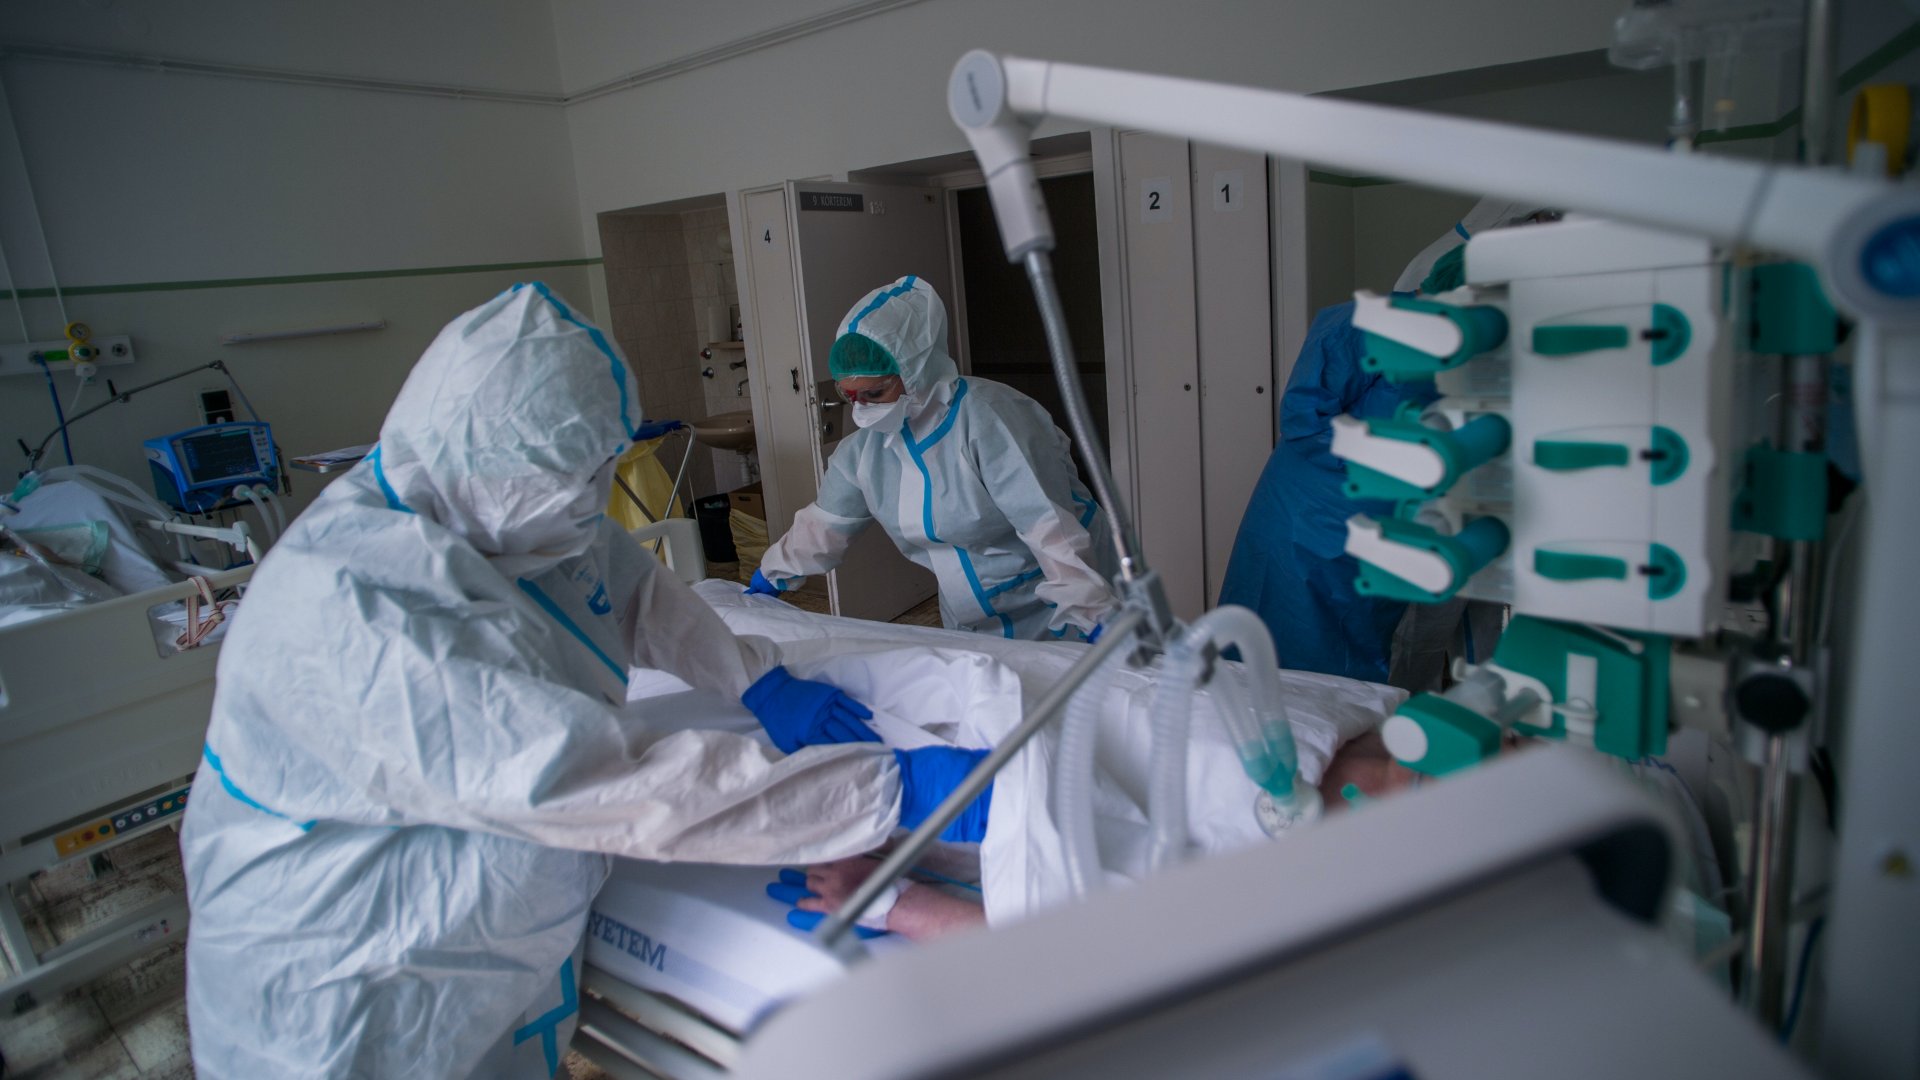 Koronavírusos beteget ápolnak a kórházban